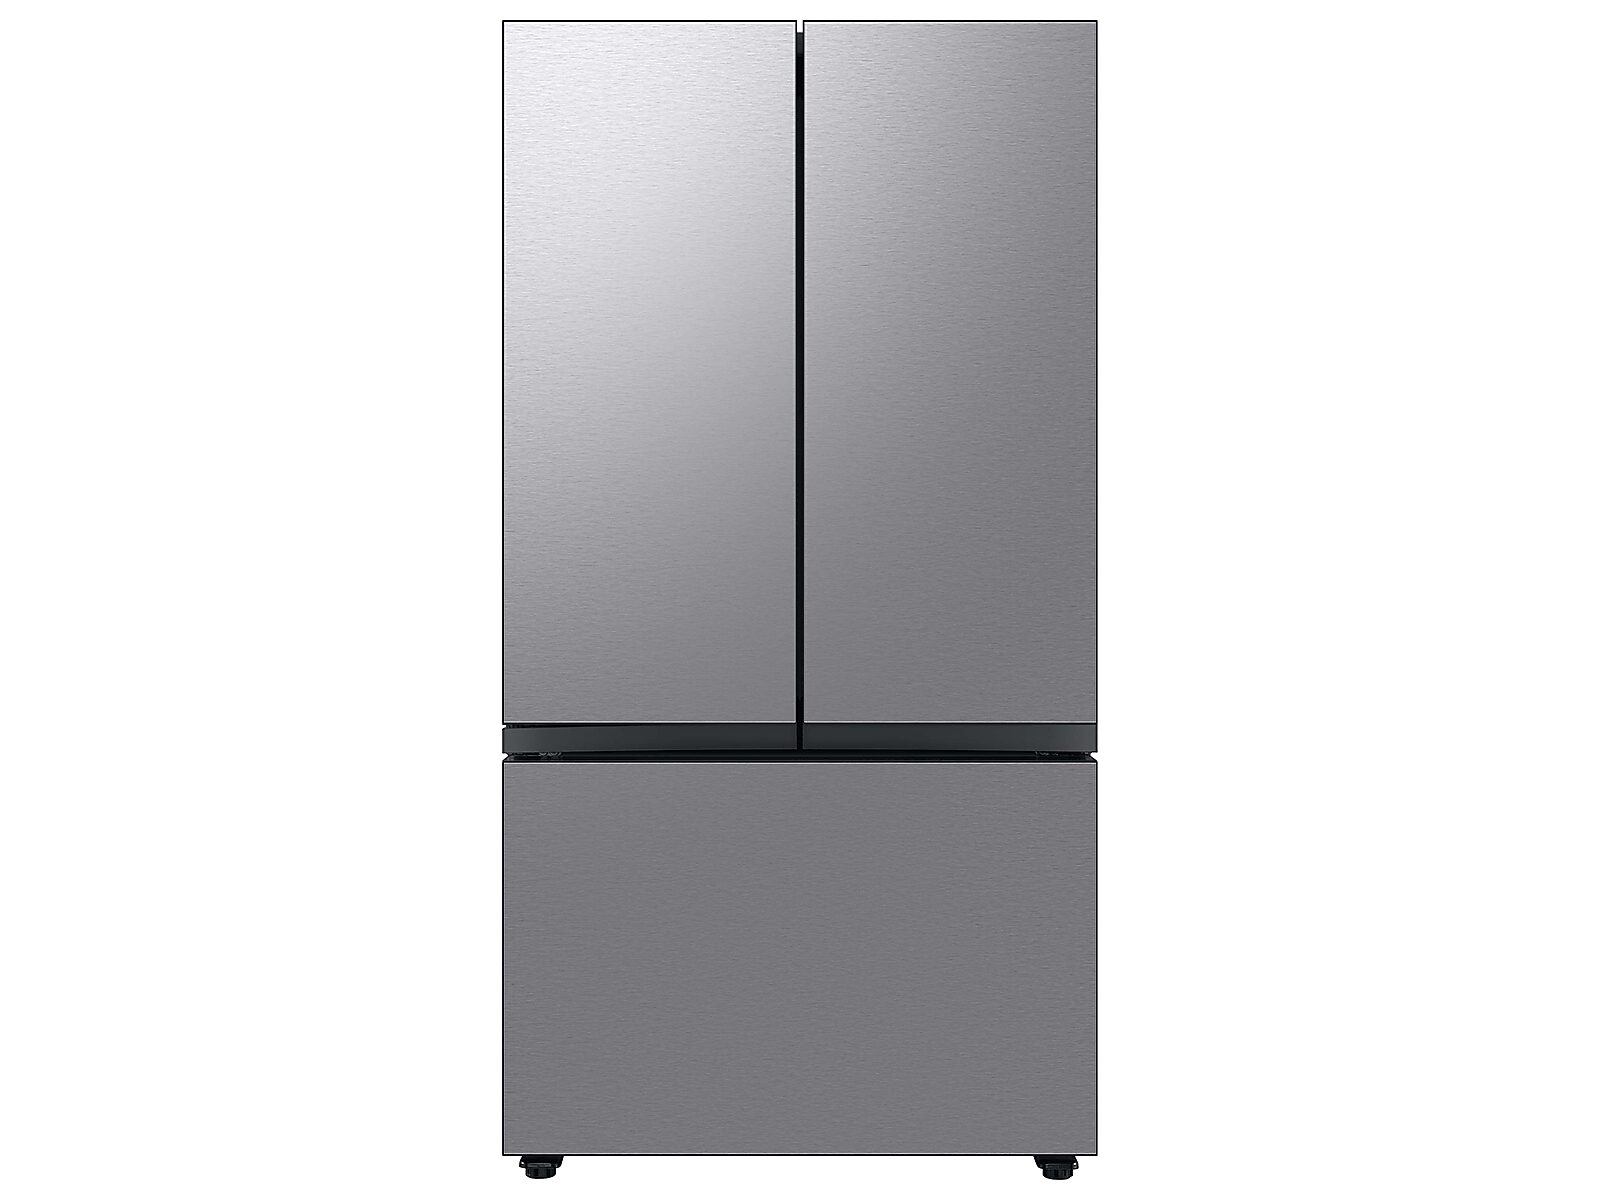 Samsung Bespoke 3-Door French Door Refrigerator (24 cu. ft.) with Beverage Center™ in Stainless Steel(RF24BB6600QLAA)